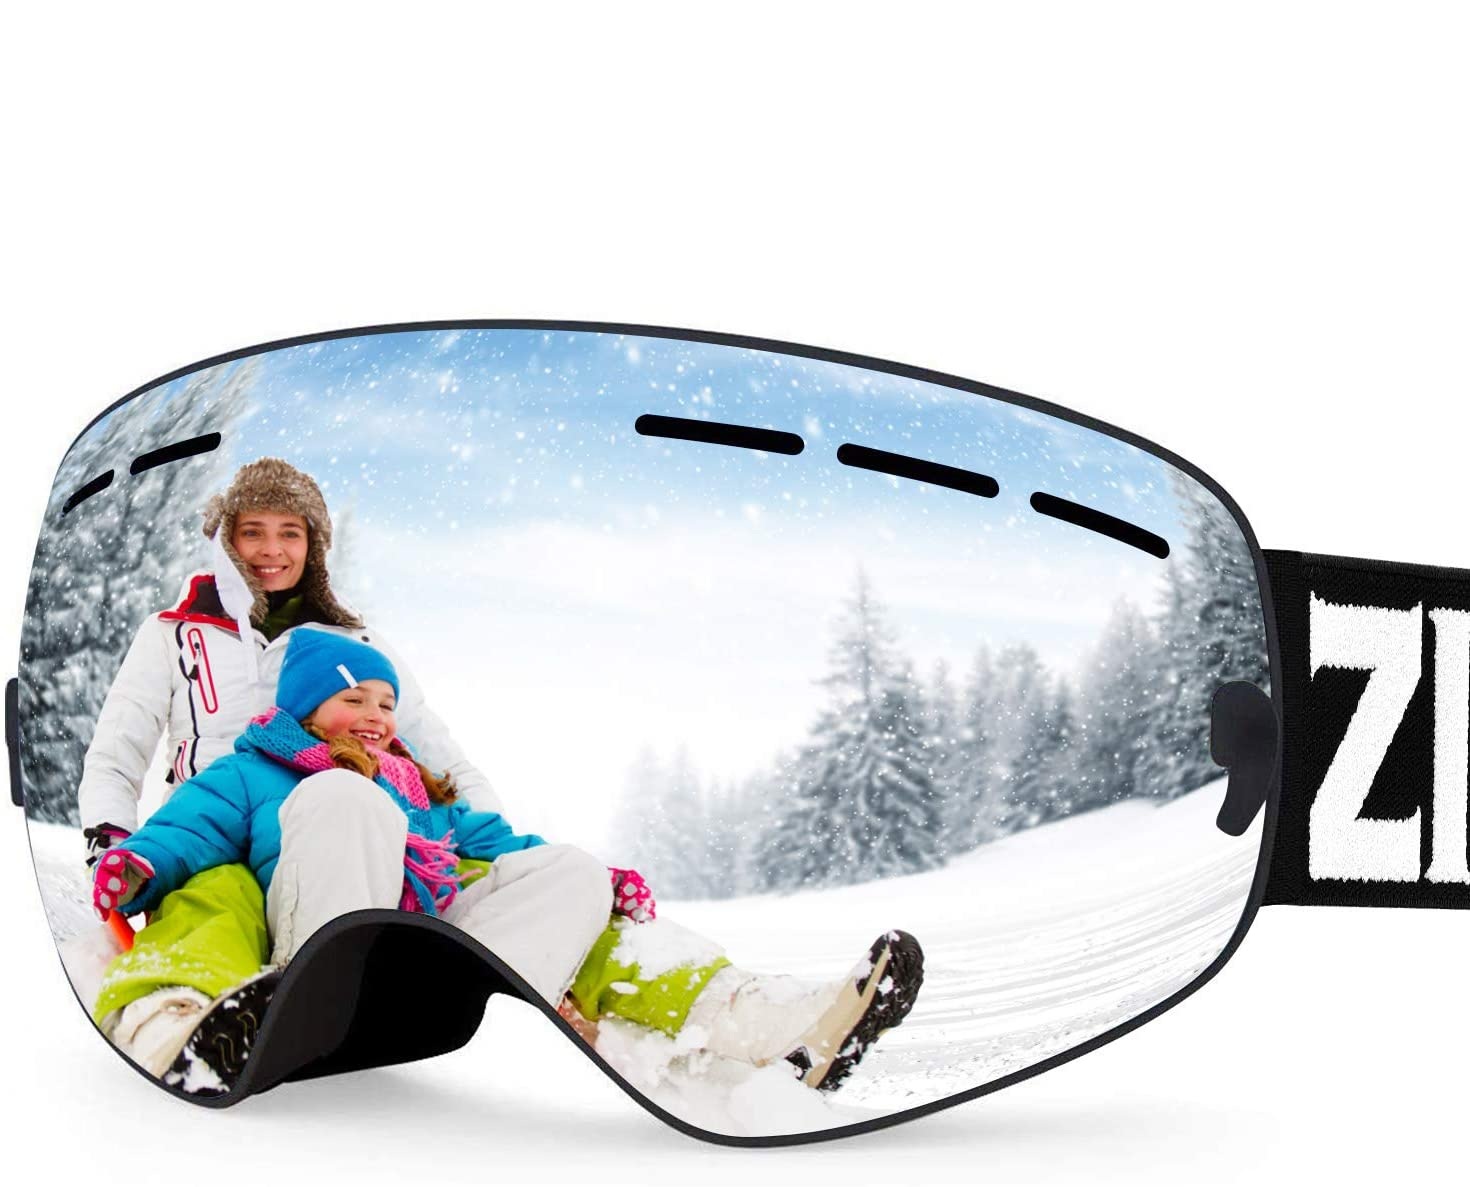 ZIONOR XMINI Kids Ski Goggles